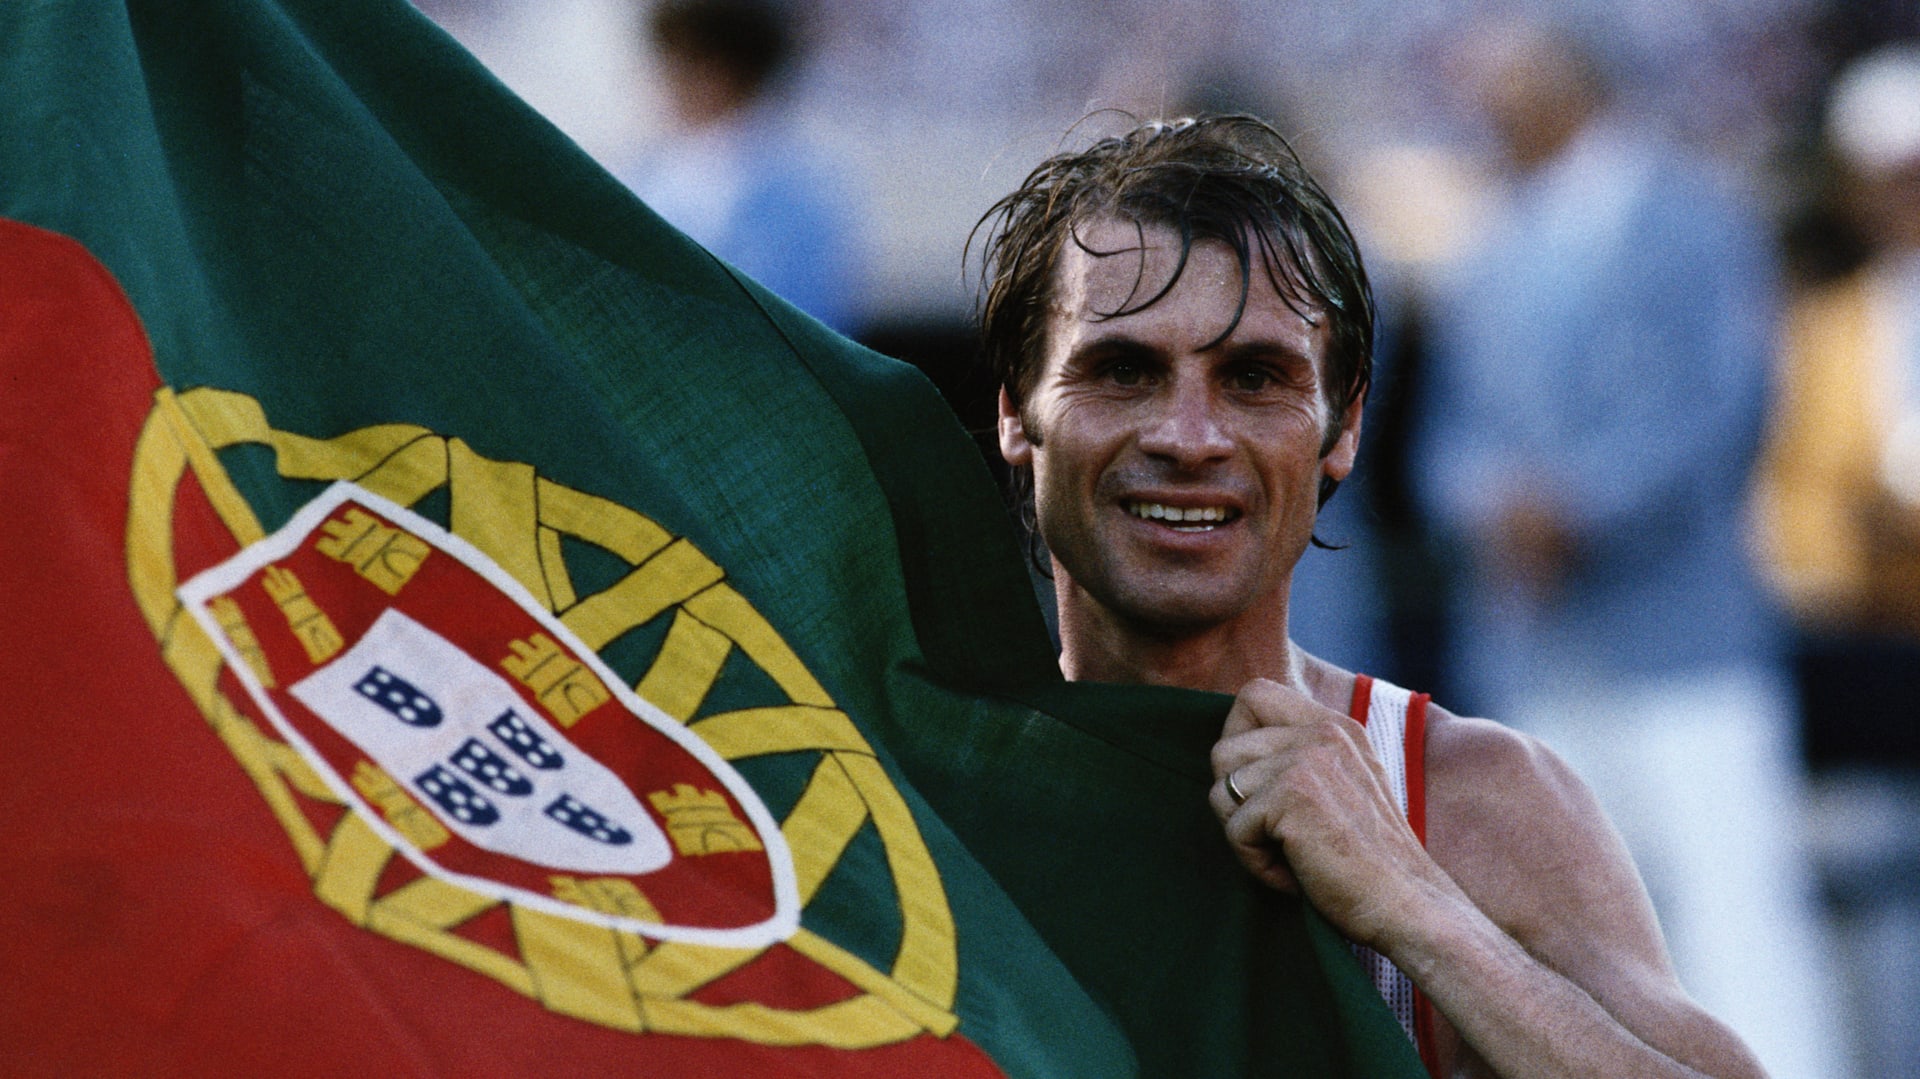 Em Dia Olímpico foi dia da Equipa Portugal ganhar medalhas nos Jogos  Europeus